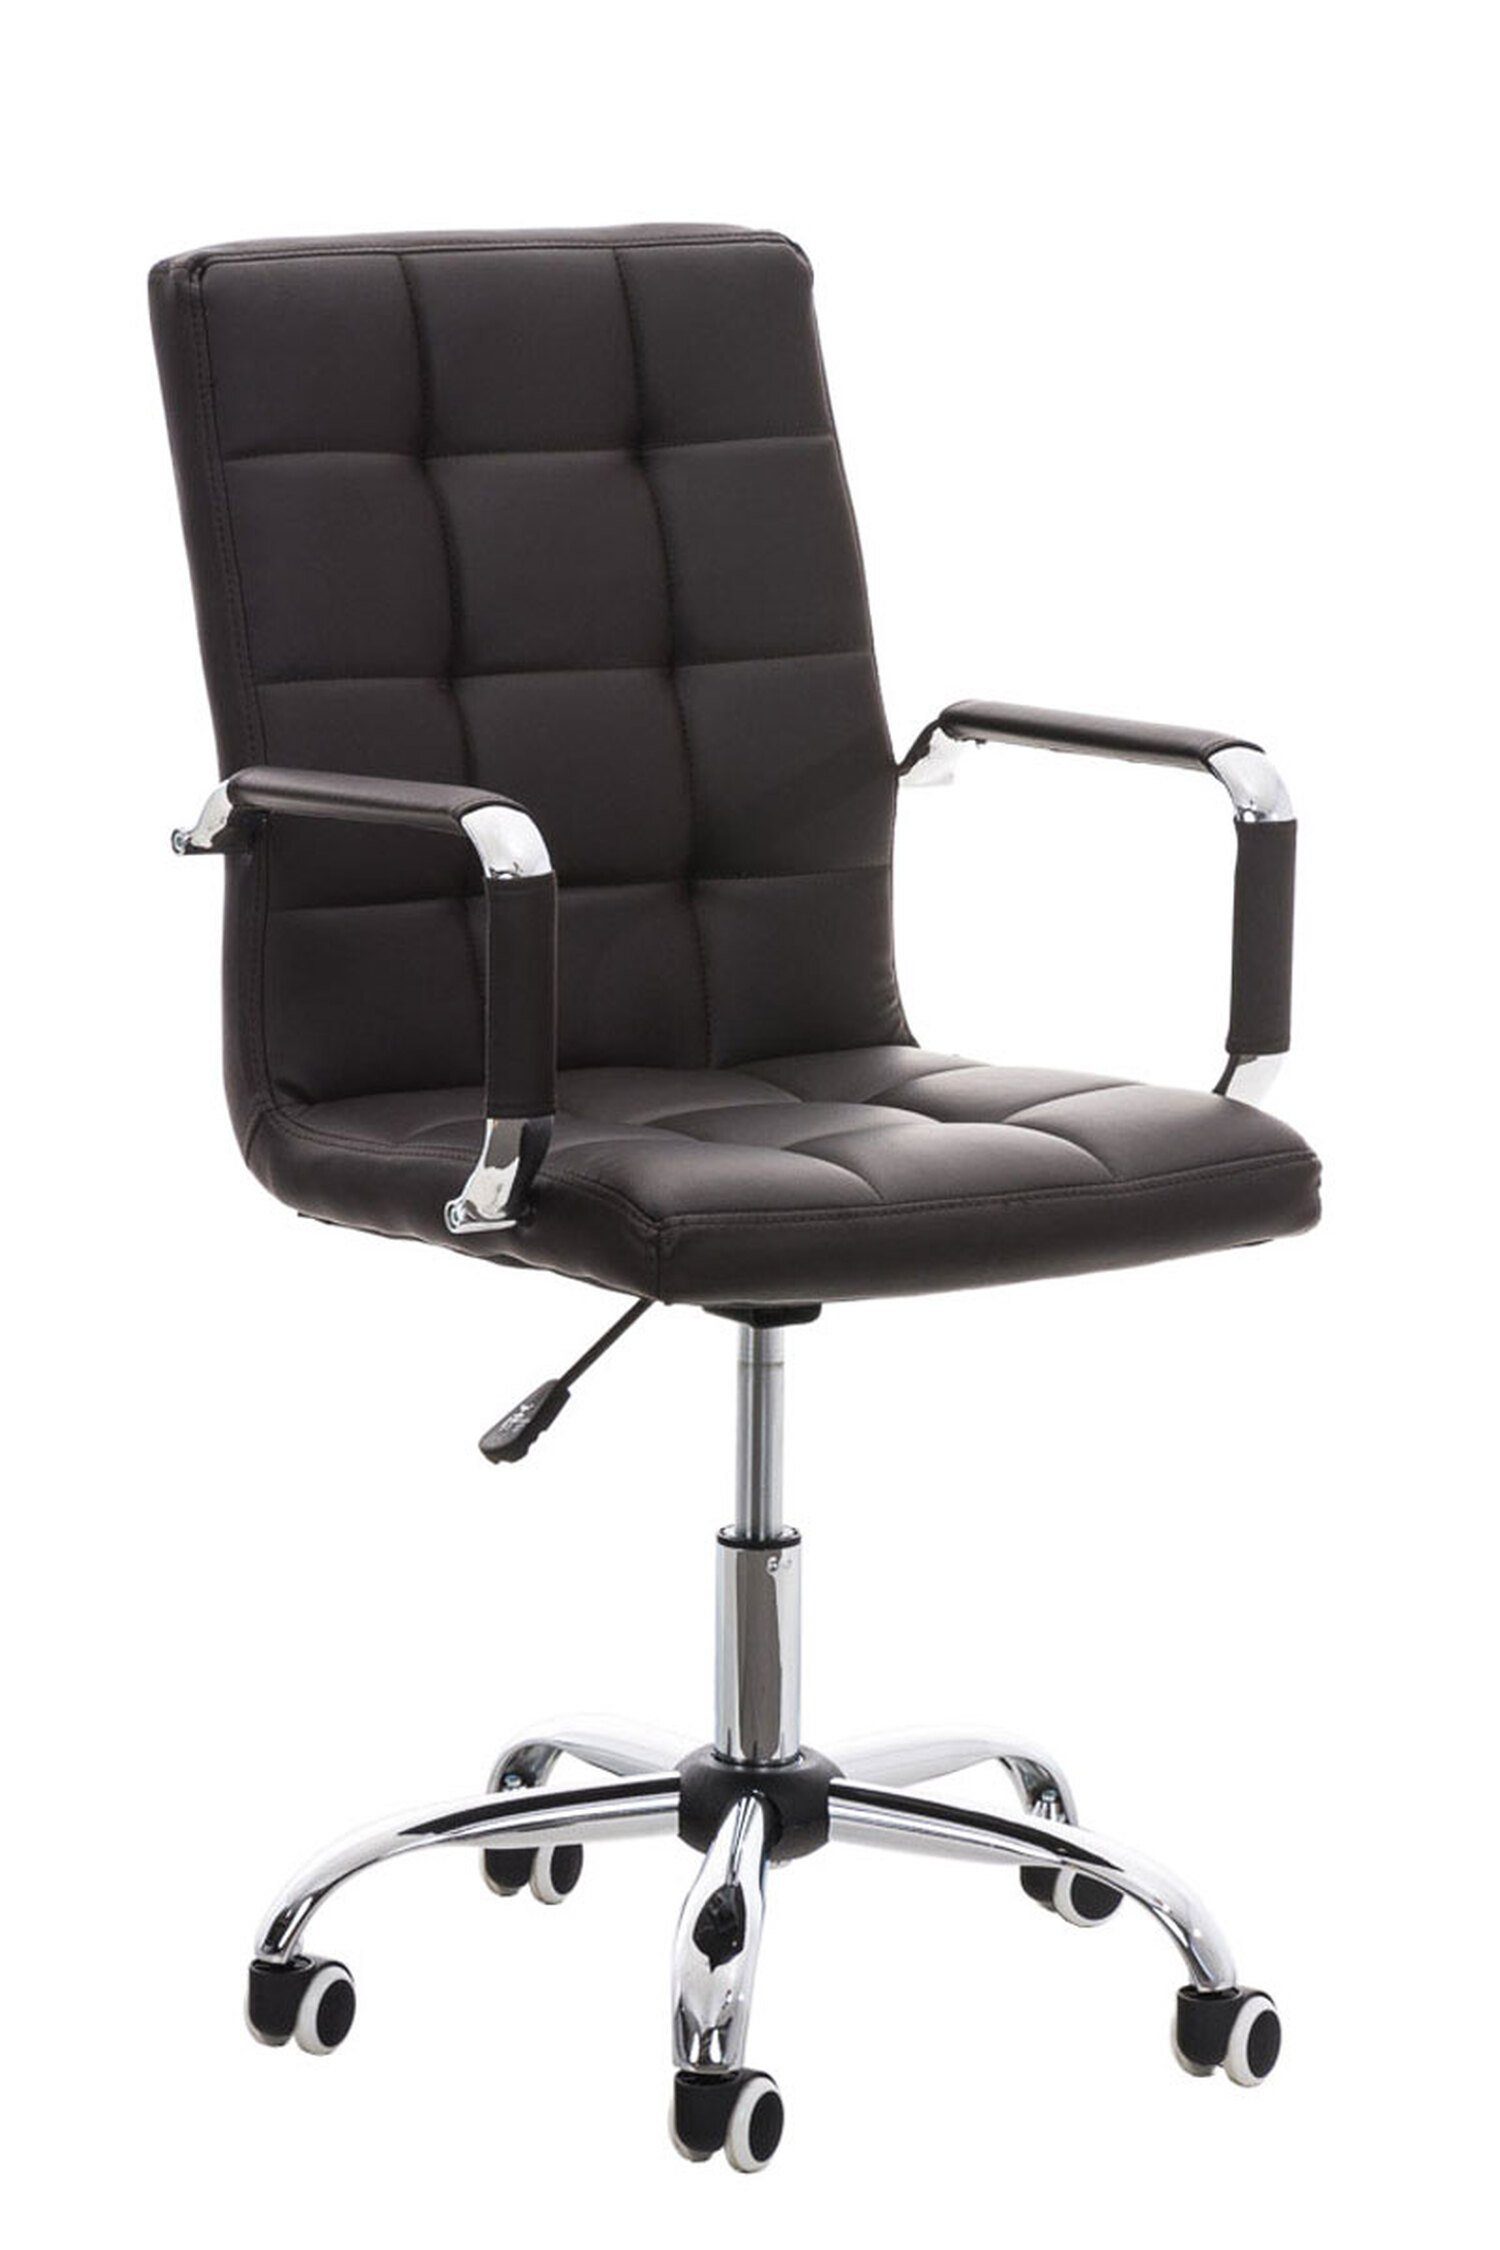 TPFLiving Bürostuhl Deal V2 mit bequemer Rückenlehne (Schreibtischstuhl, Drehstuhl, Konferenzstuhl, Chefsessel), Gestell: Metall chrom - Sitzfläche: Kunstleder braun